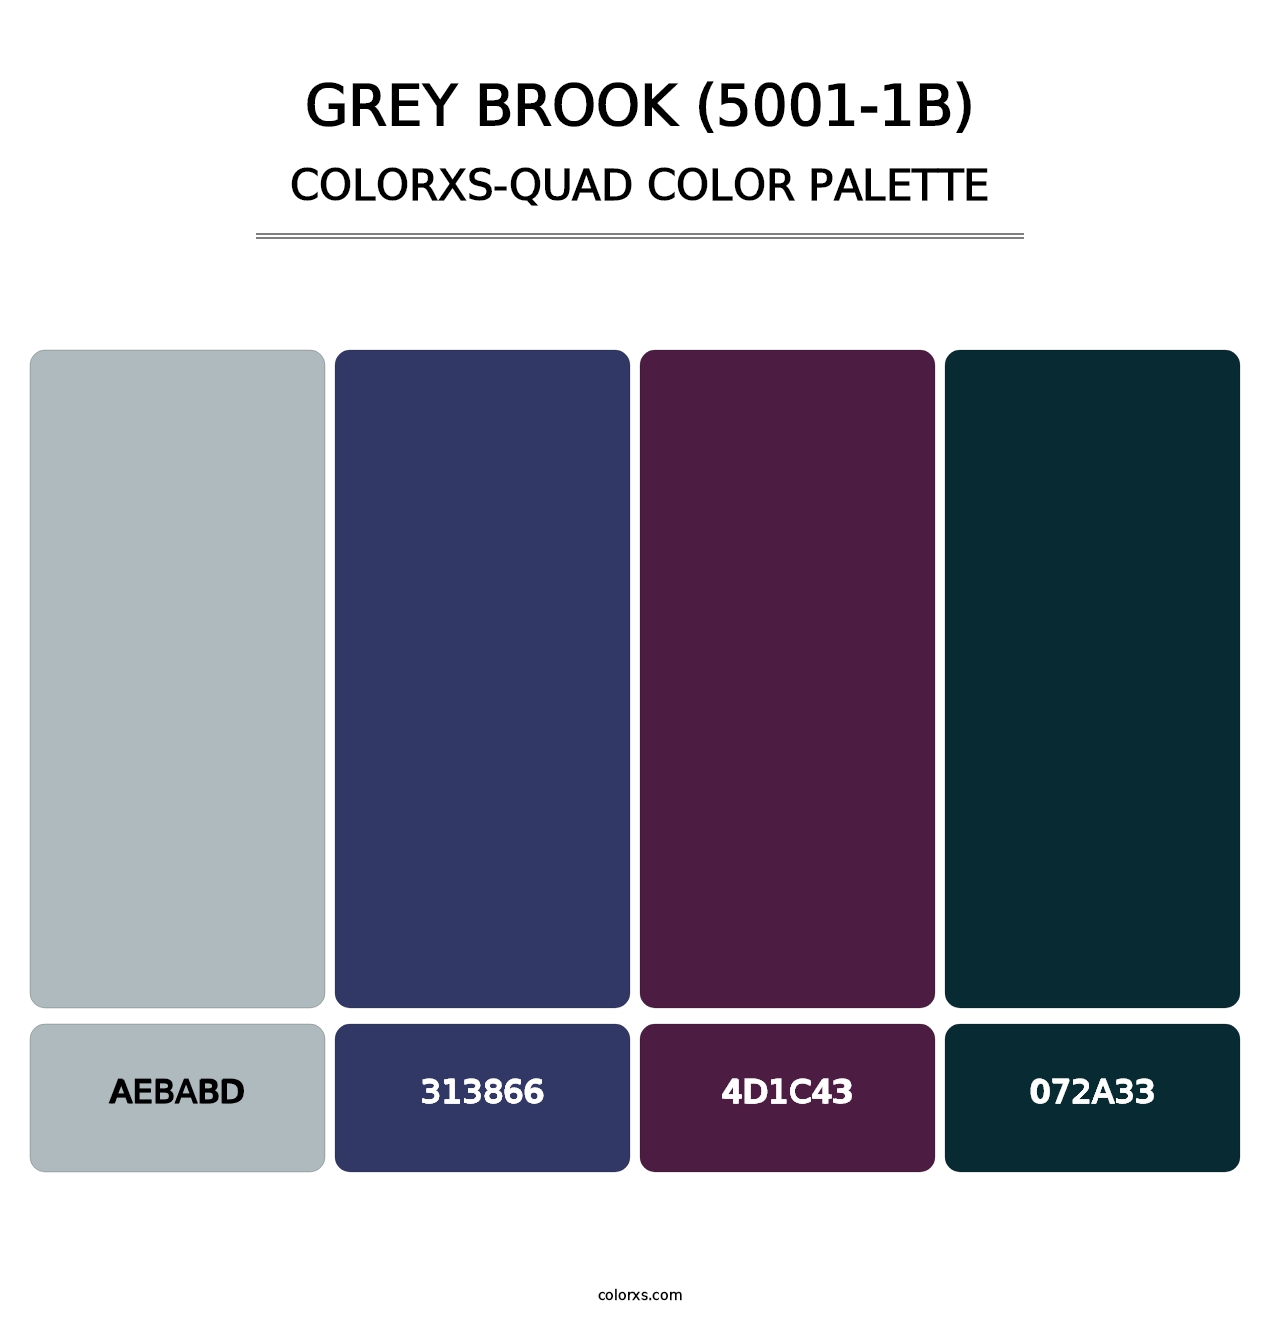 Grey Brook (5001-1B) - Colorxs Quad Palette